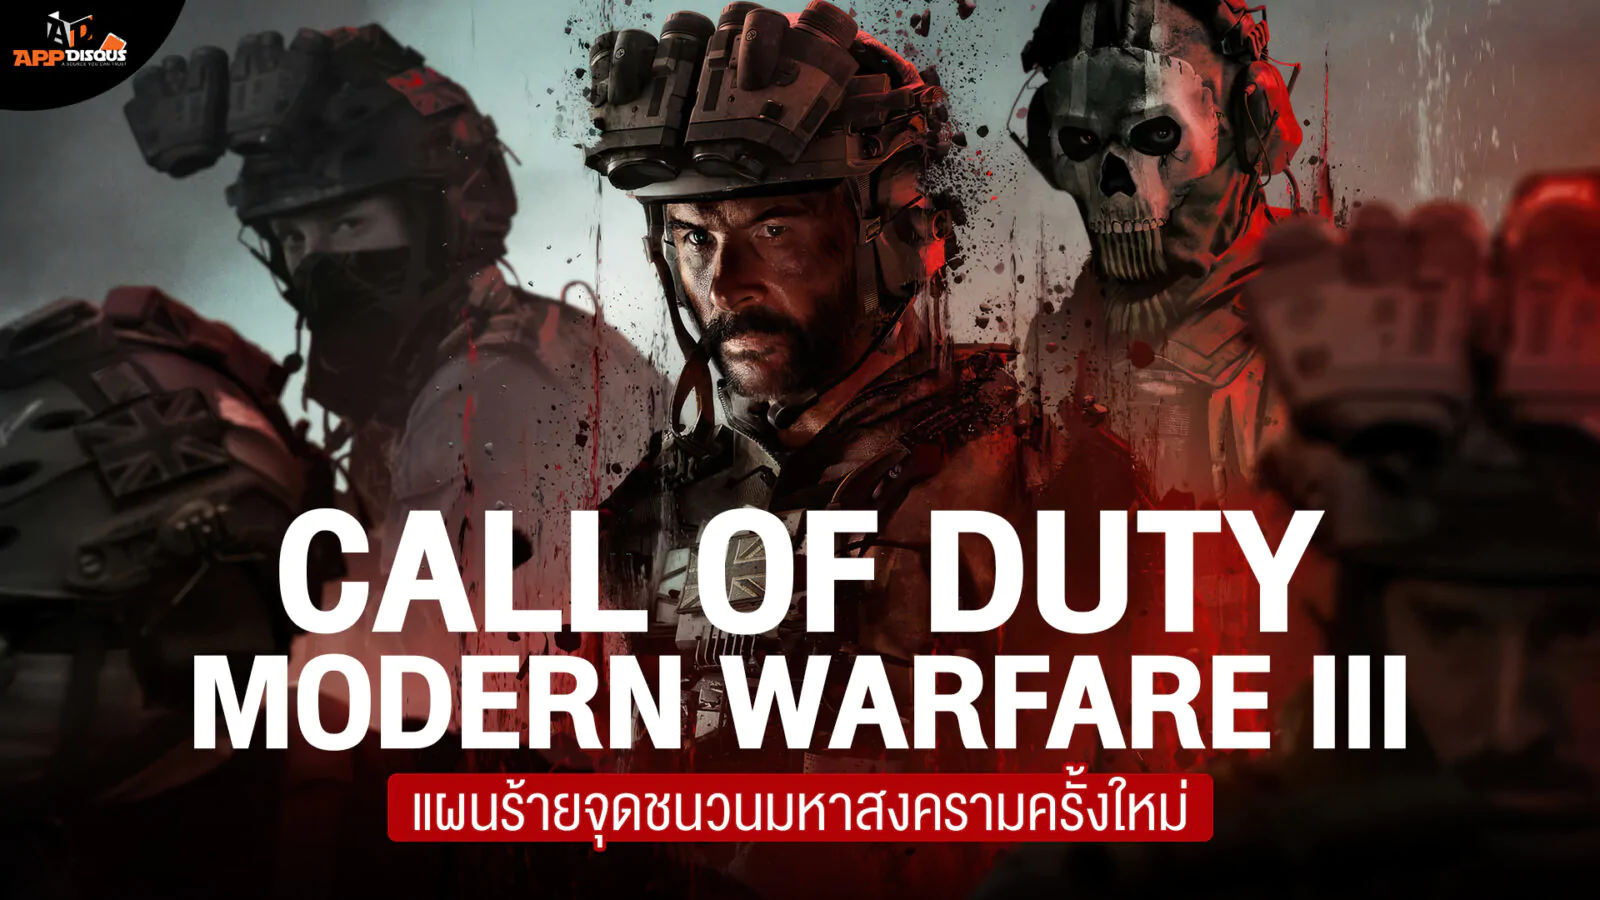 0 | Call of Duty Modern Warfare III | สรุปเนื้อเรื่อง Call of Duty: Modern Warfare III แผนร้ายจุดชนวนมหาสงครามครั้งใหม่